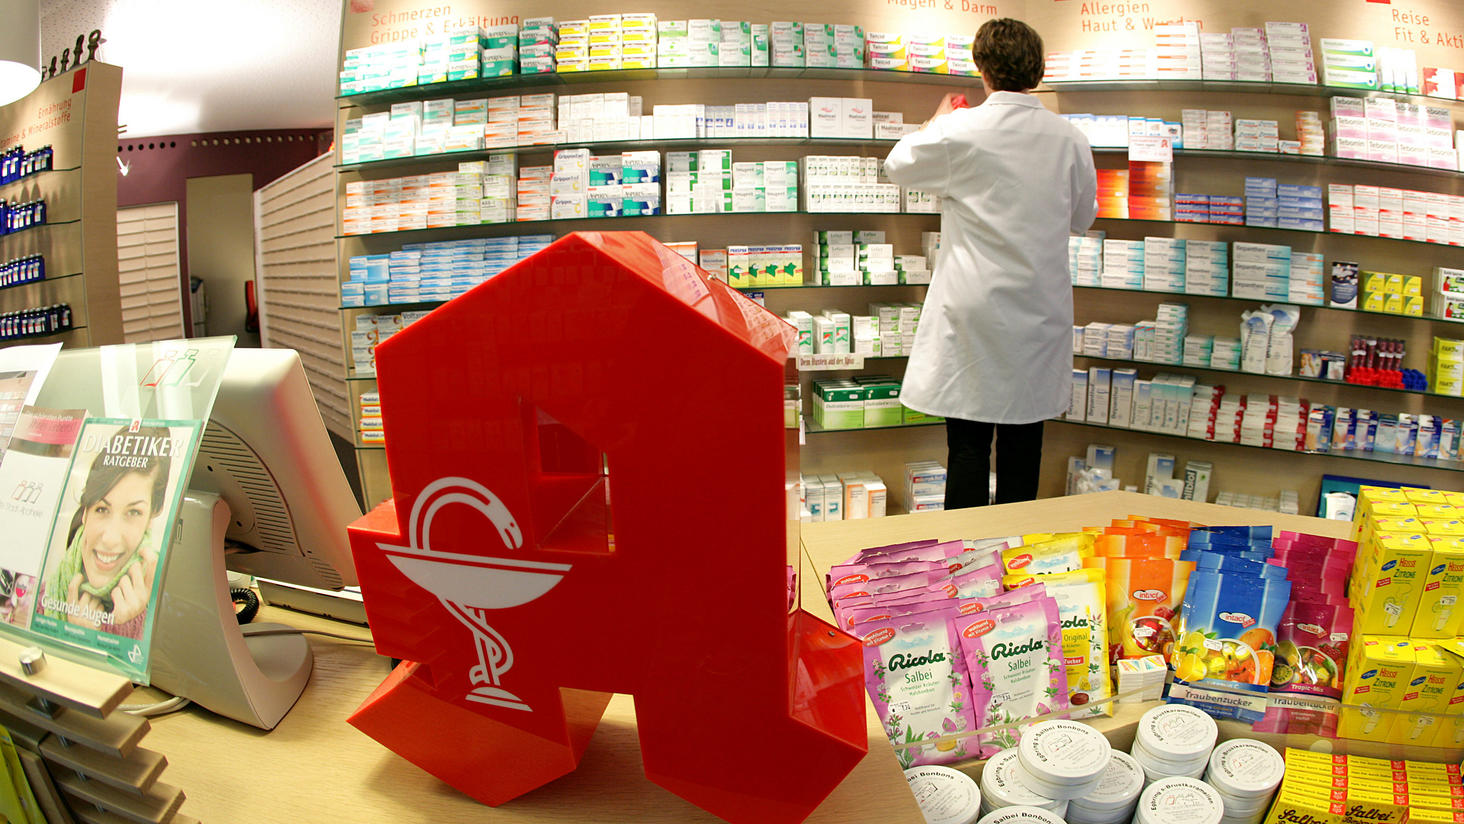 Niedrige Dosierung für höheren Gewinn: Ein Apotheker aus Bottrop soll Krebsmedikamente gestreckt haben.